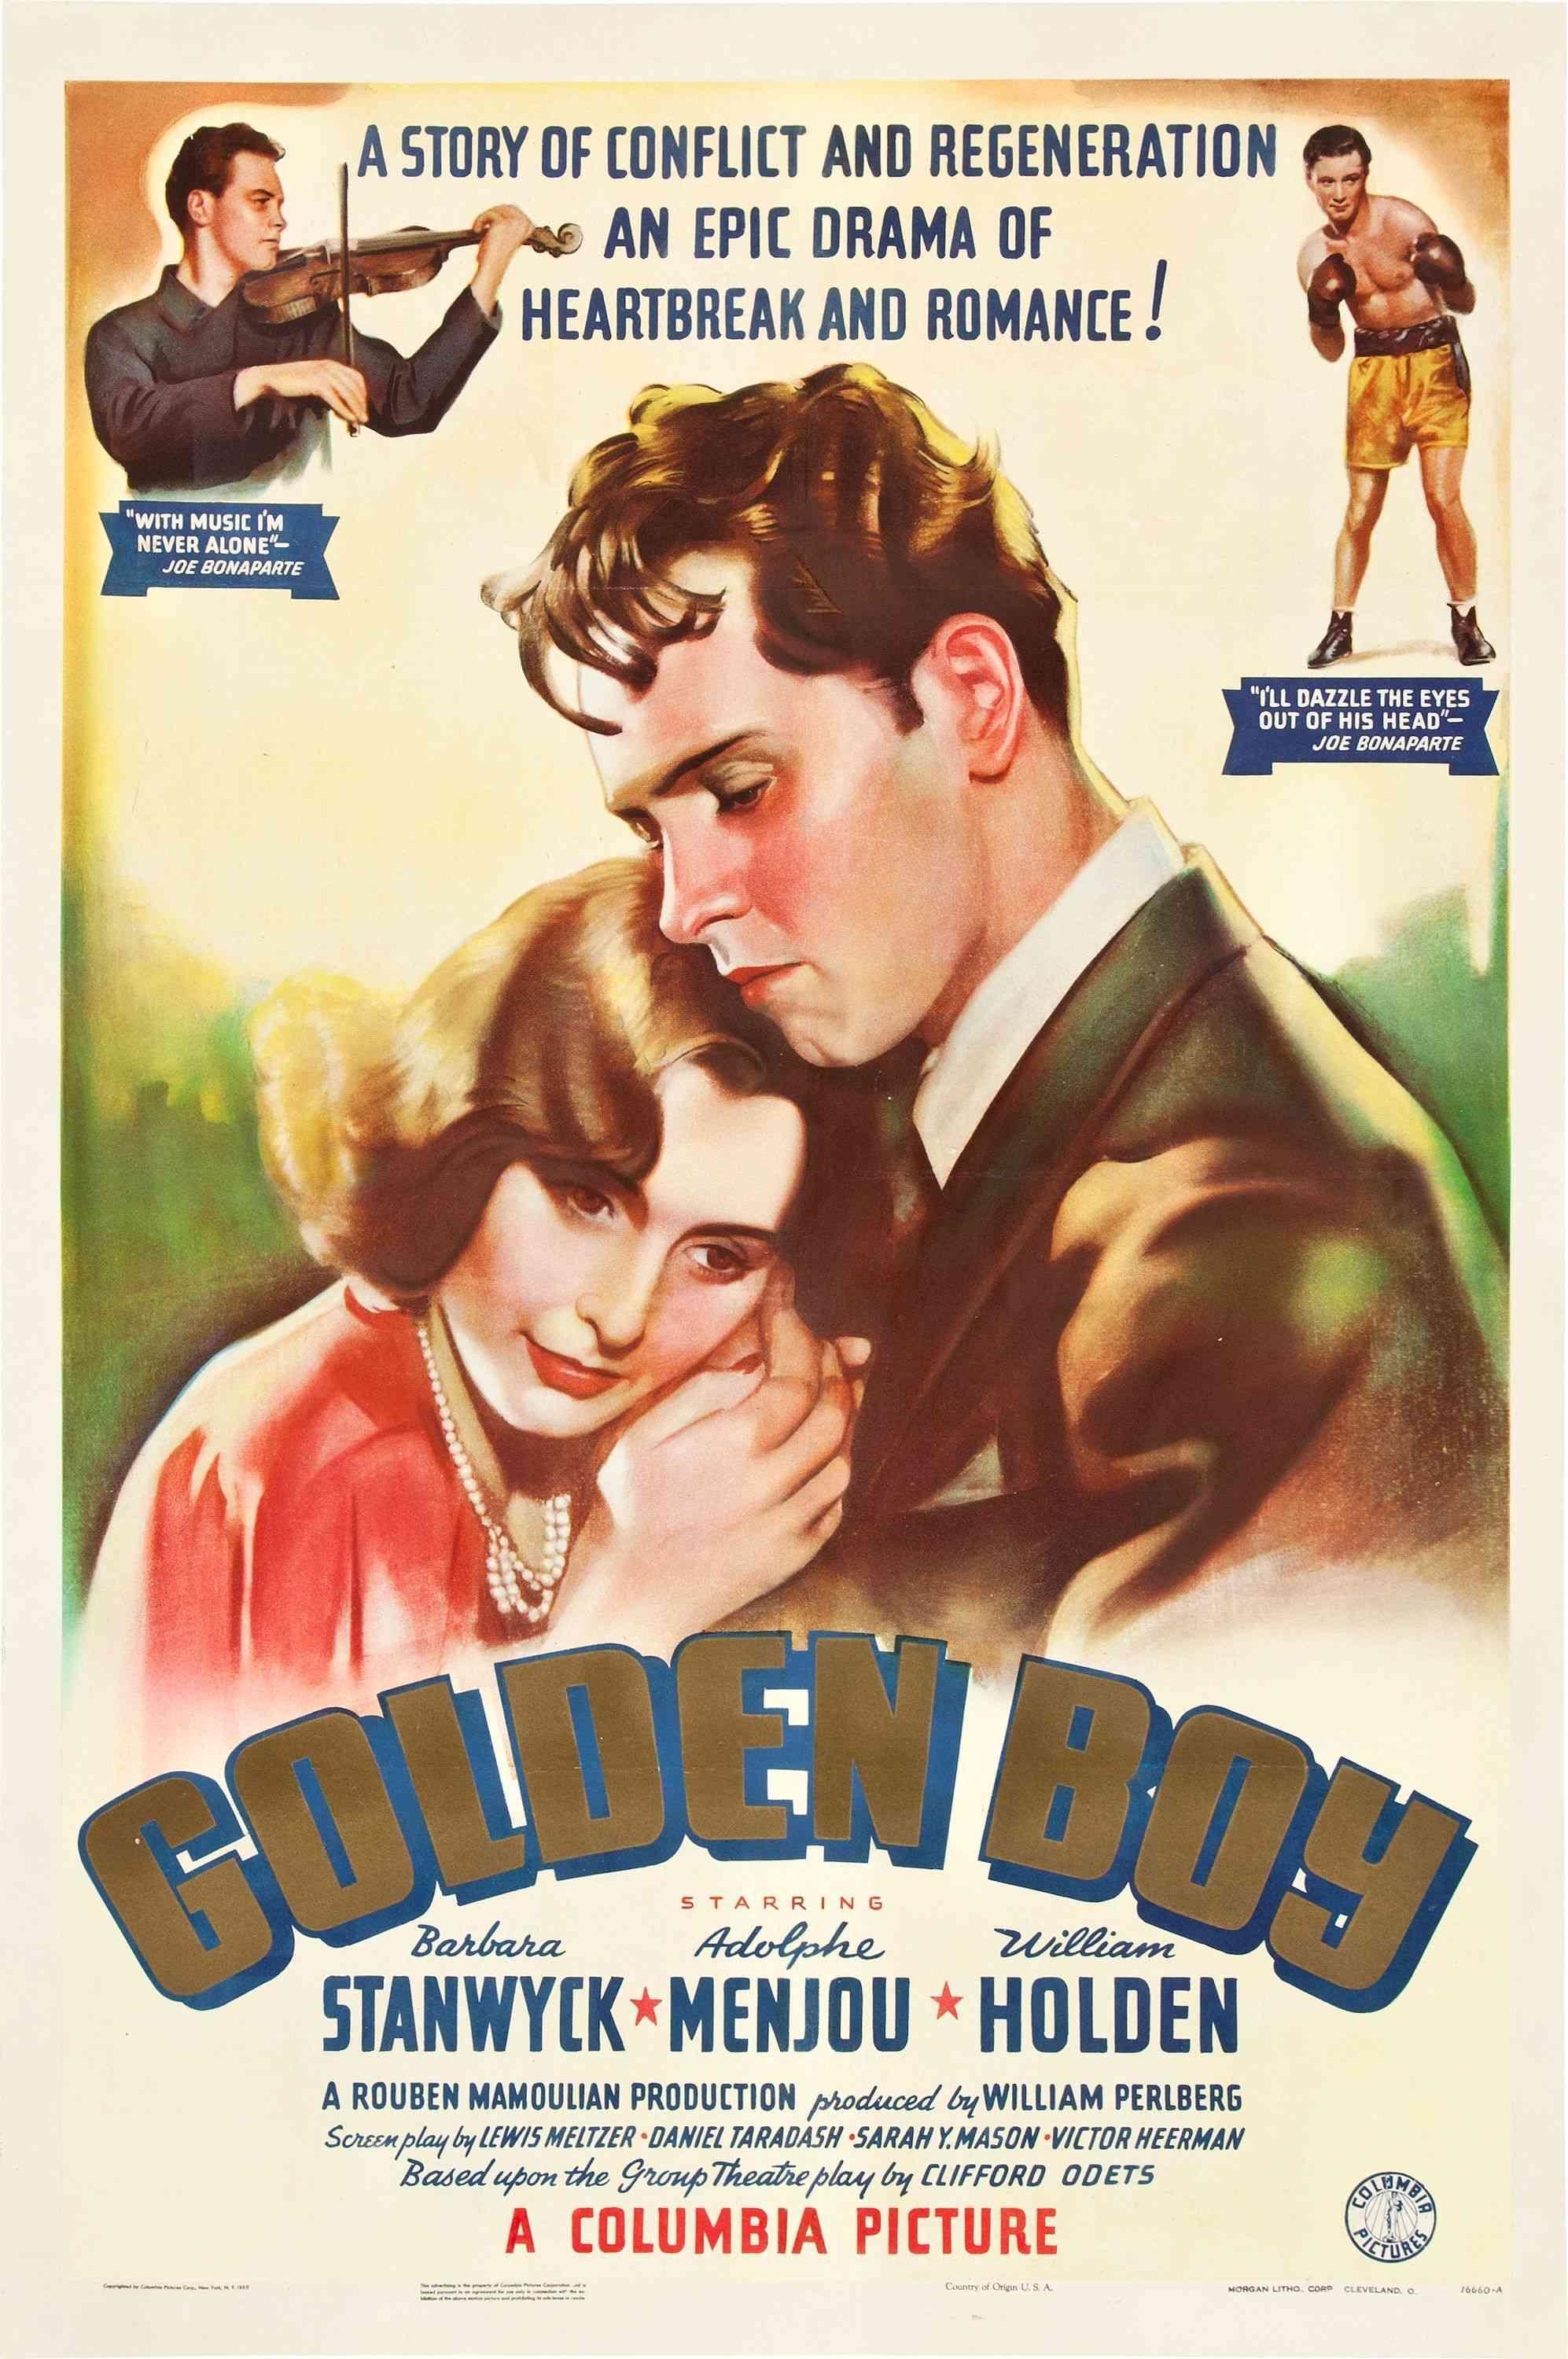 Постер фильма Золотой мальчик | Golden Boy